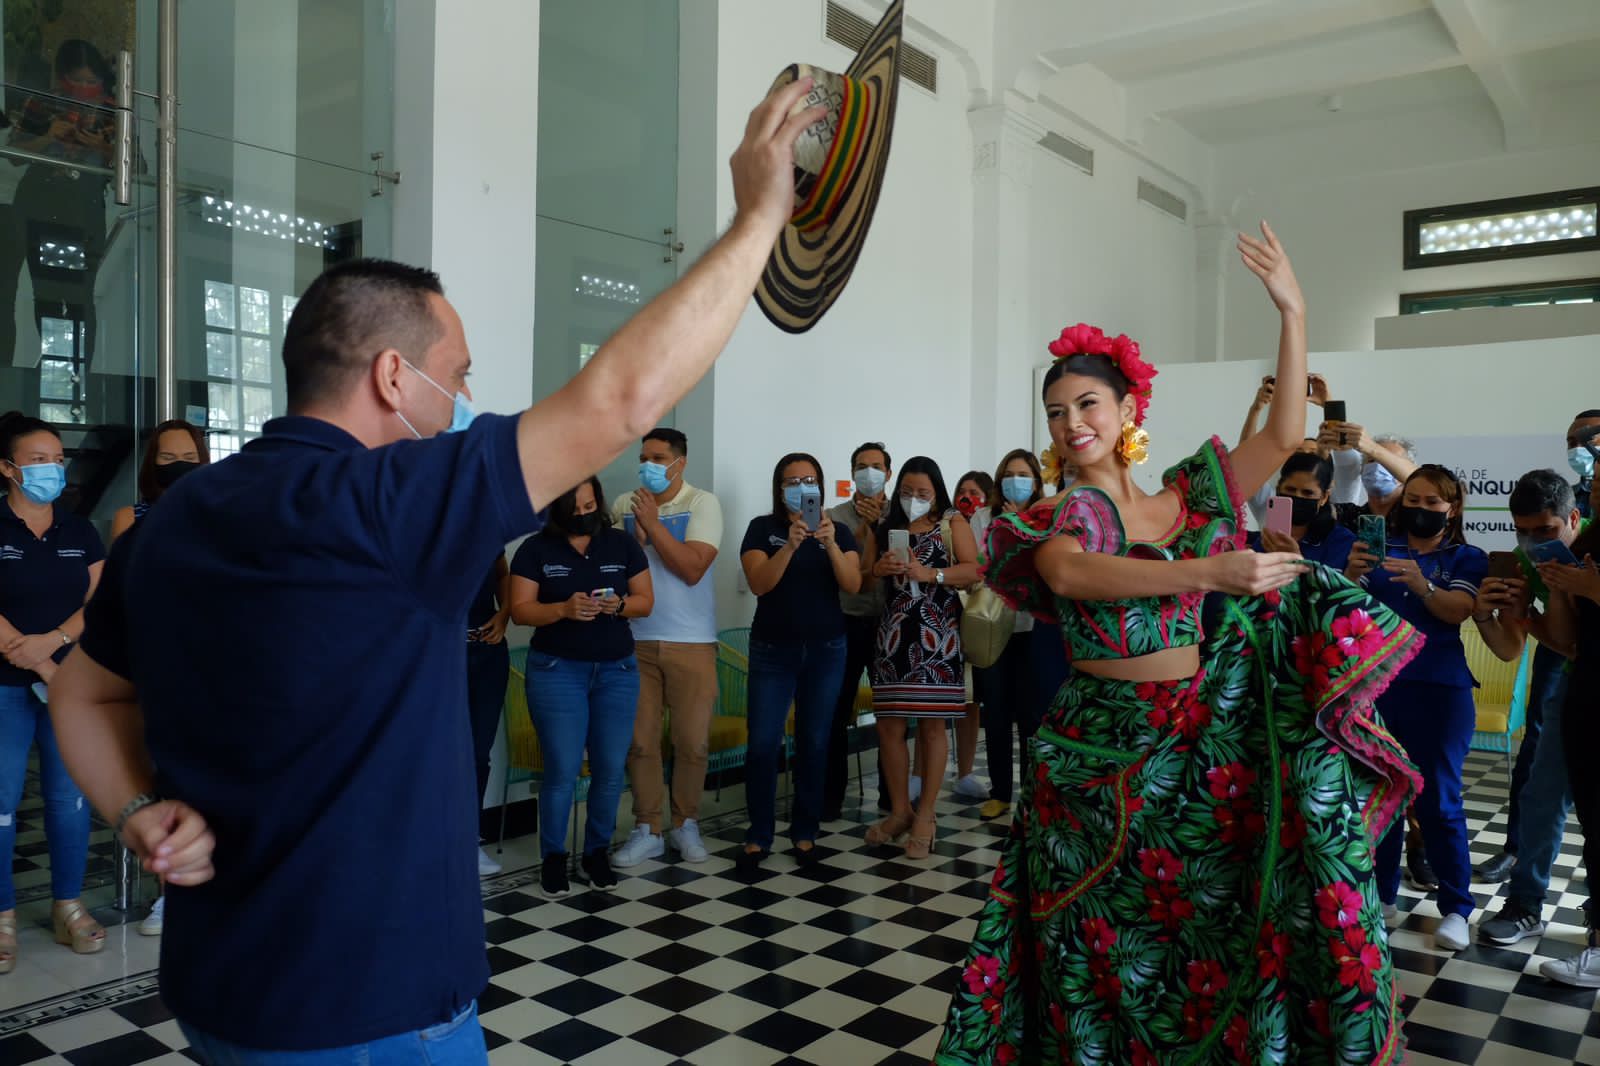 La reina Valeria Charris baila en la Intendencia Fluvial, sede de la Secretaría de Cultura.